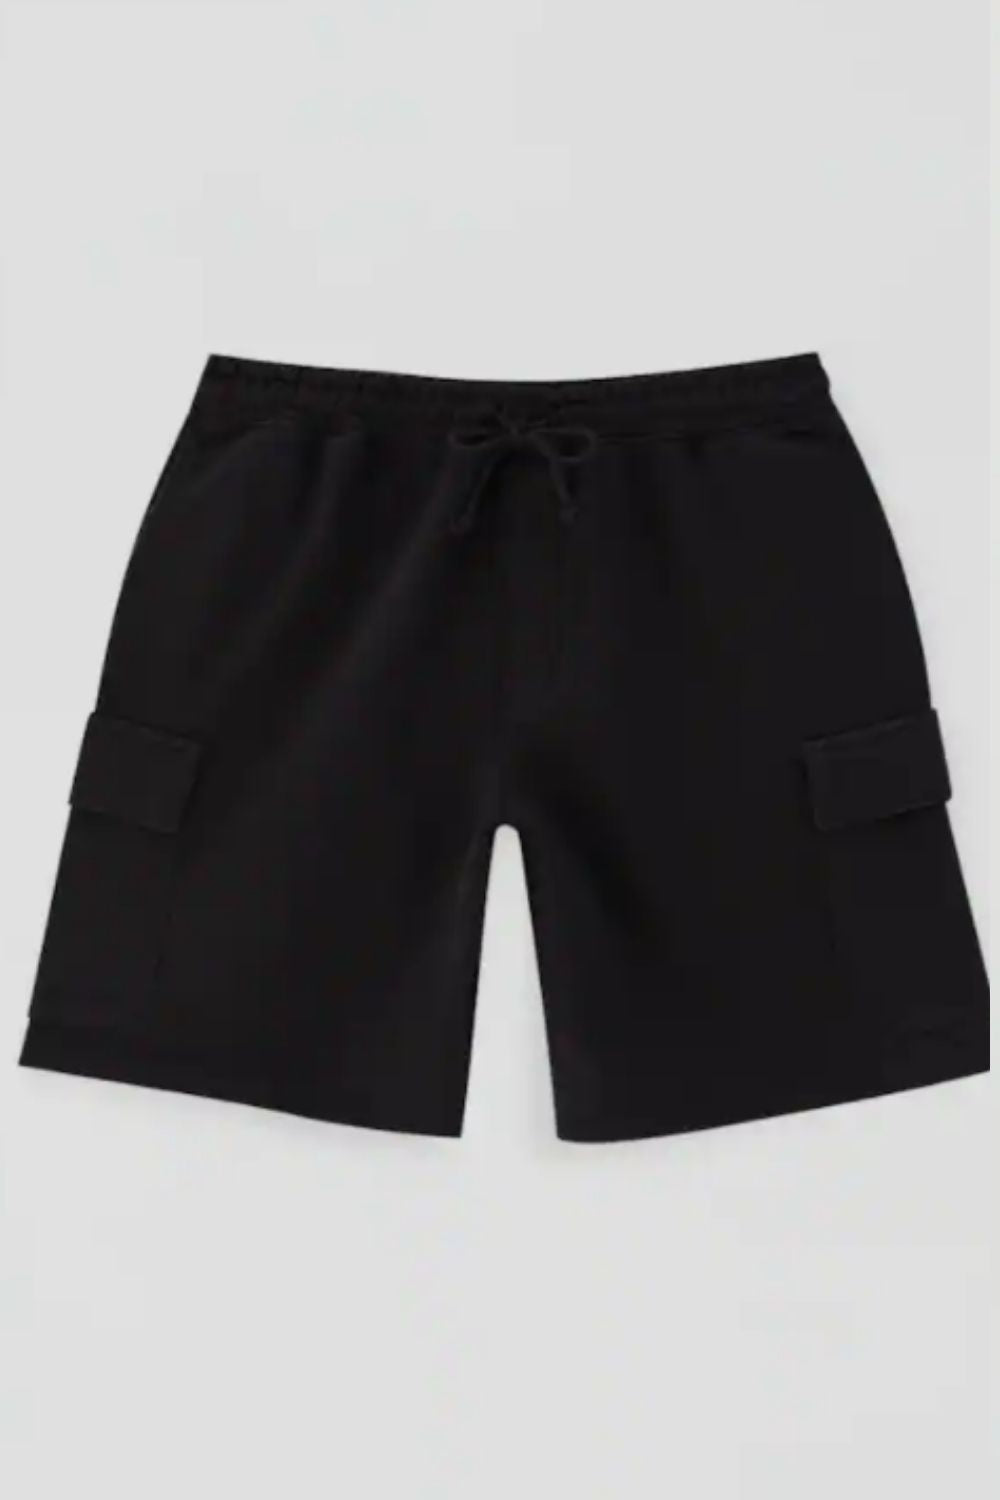 Flap Pocket Drawstring Shorts